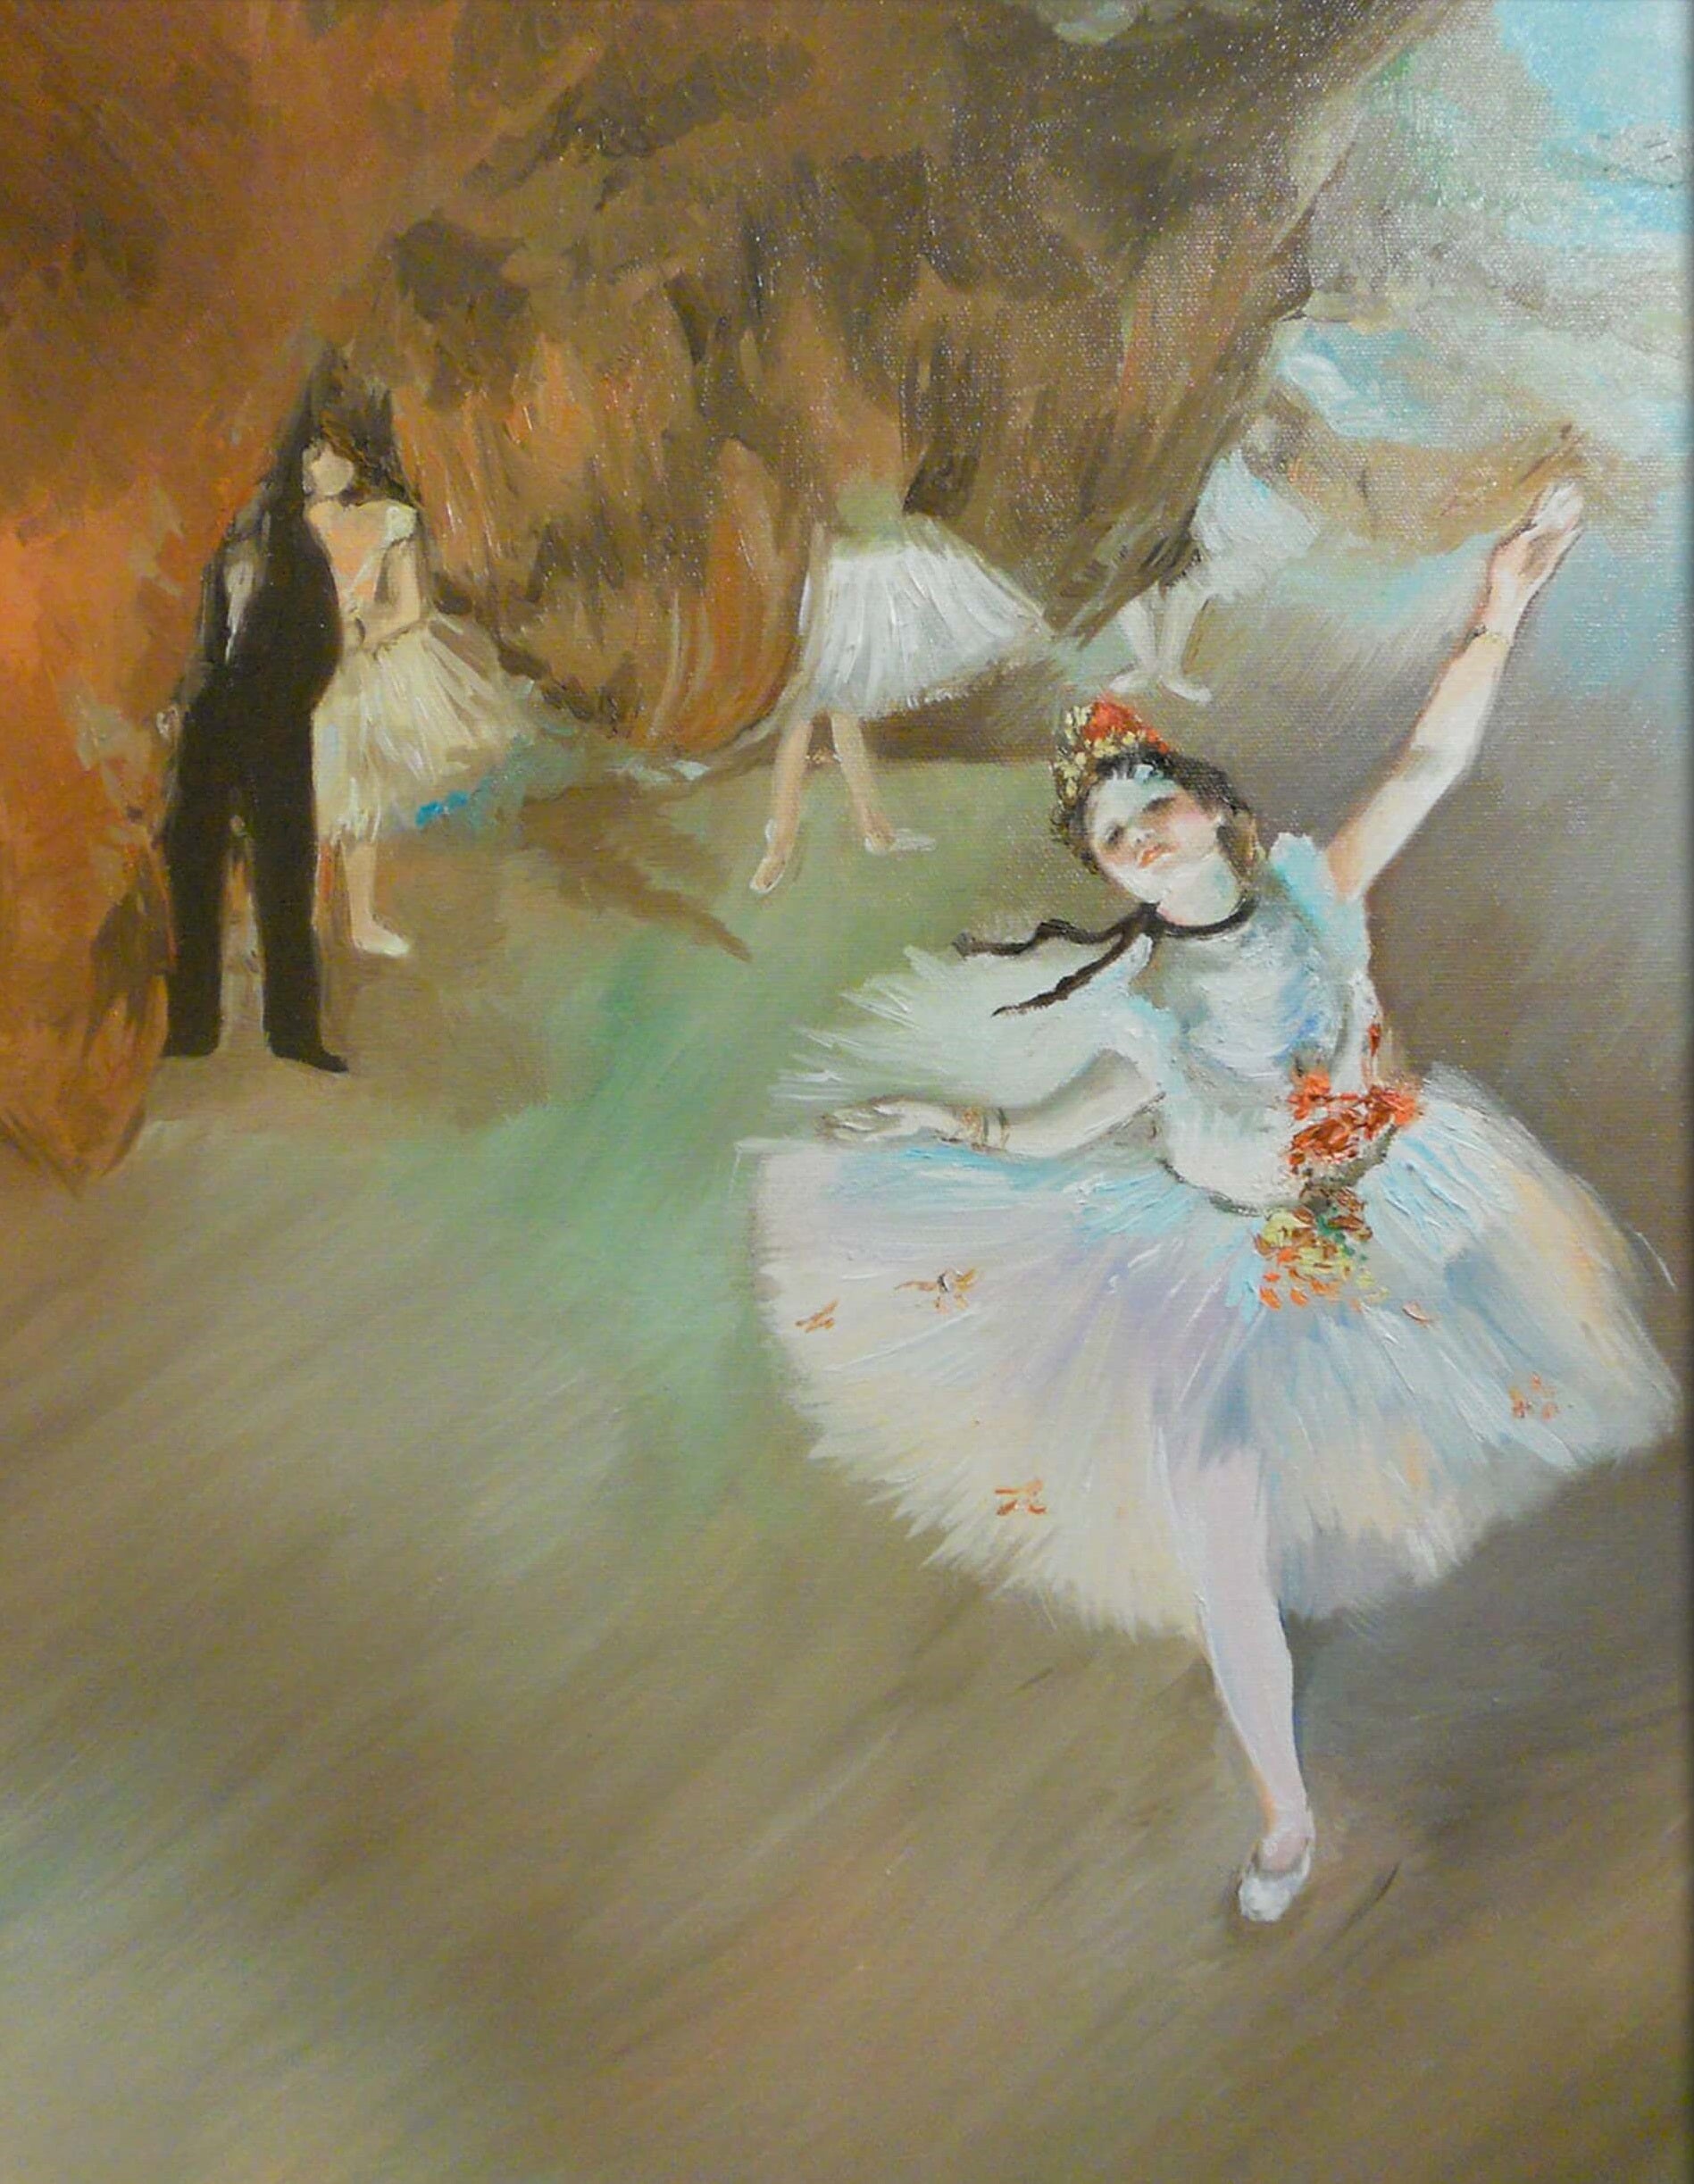 Reproduction De Ballet LÉtoile De Edgar Degas Galerie Mont Blanc 